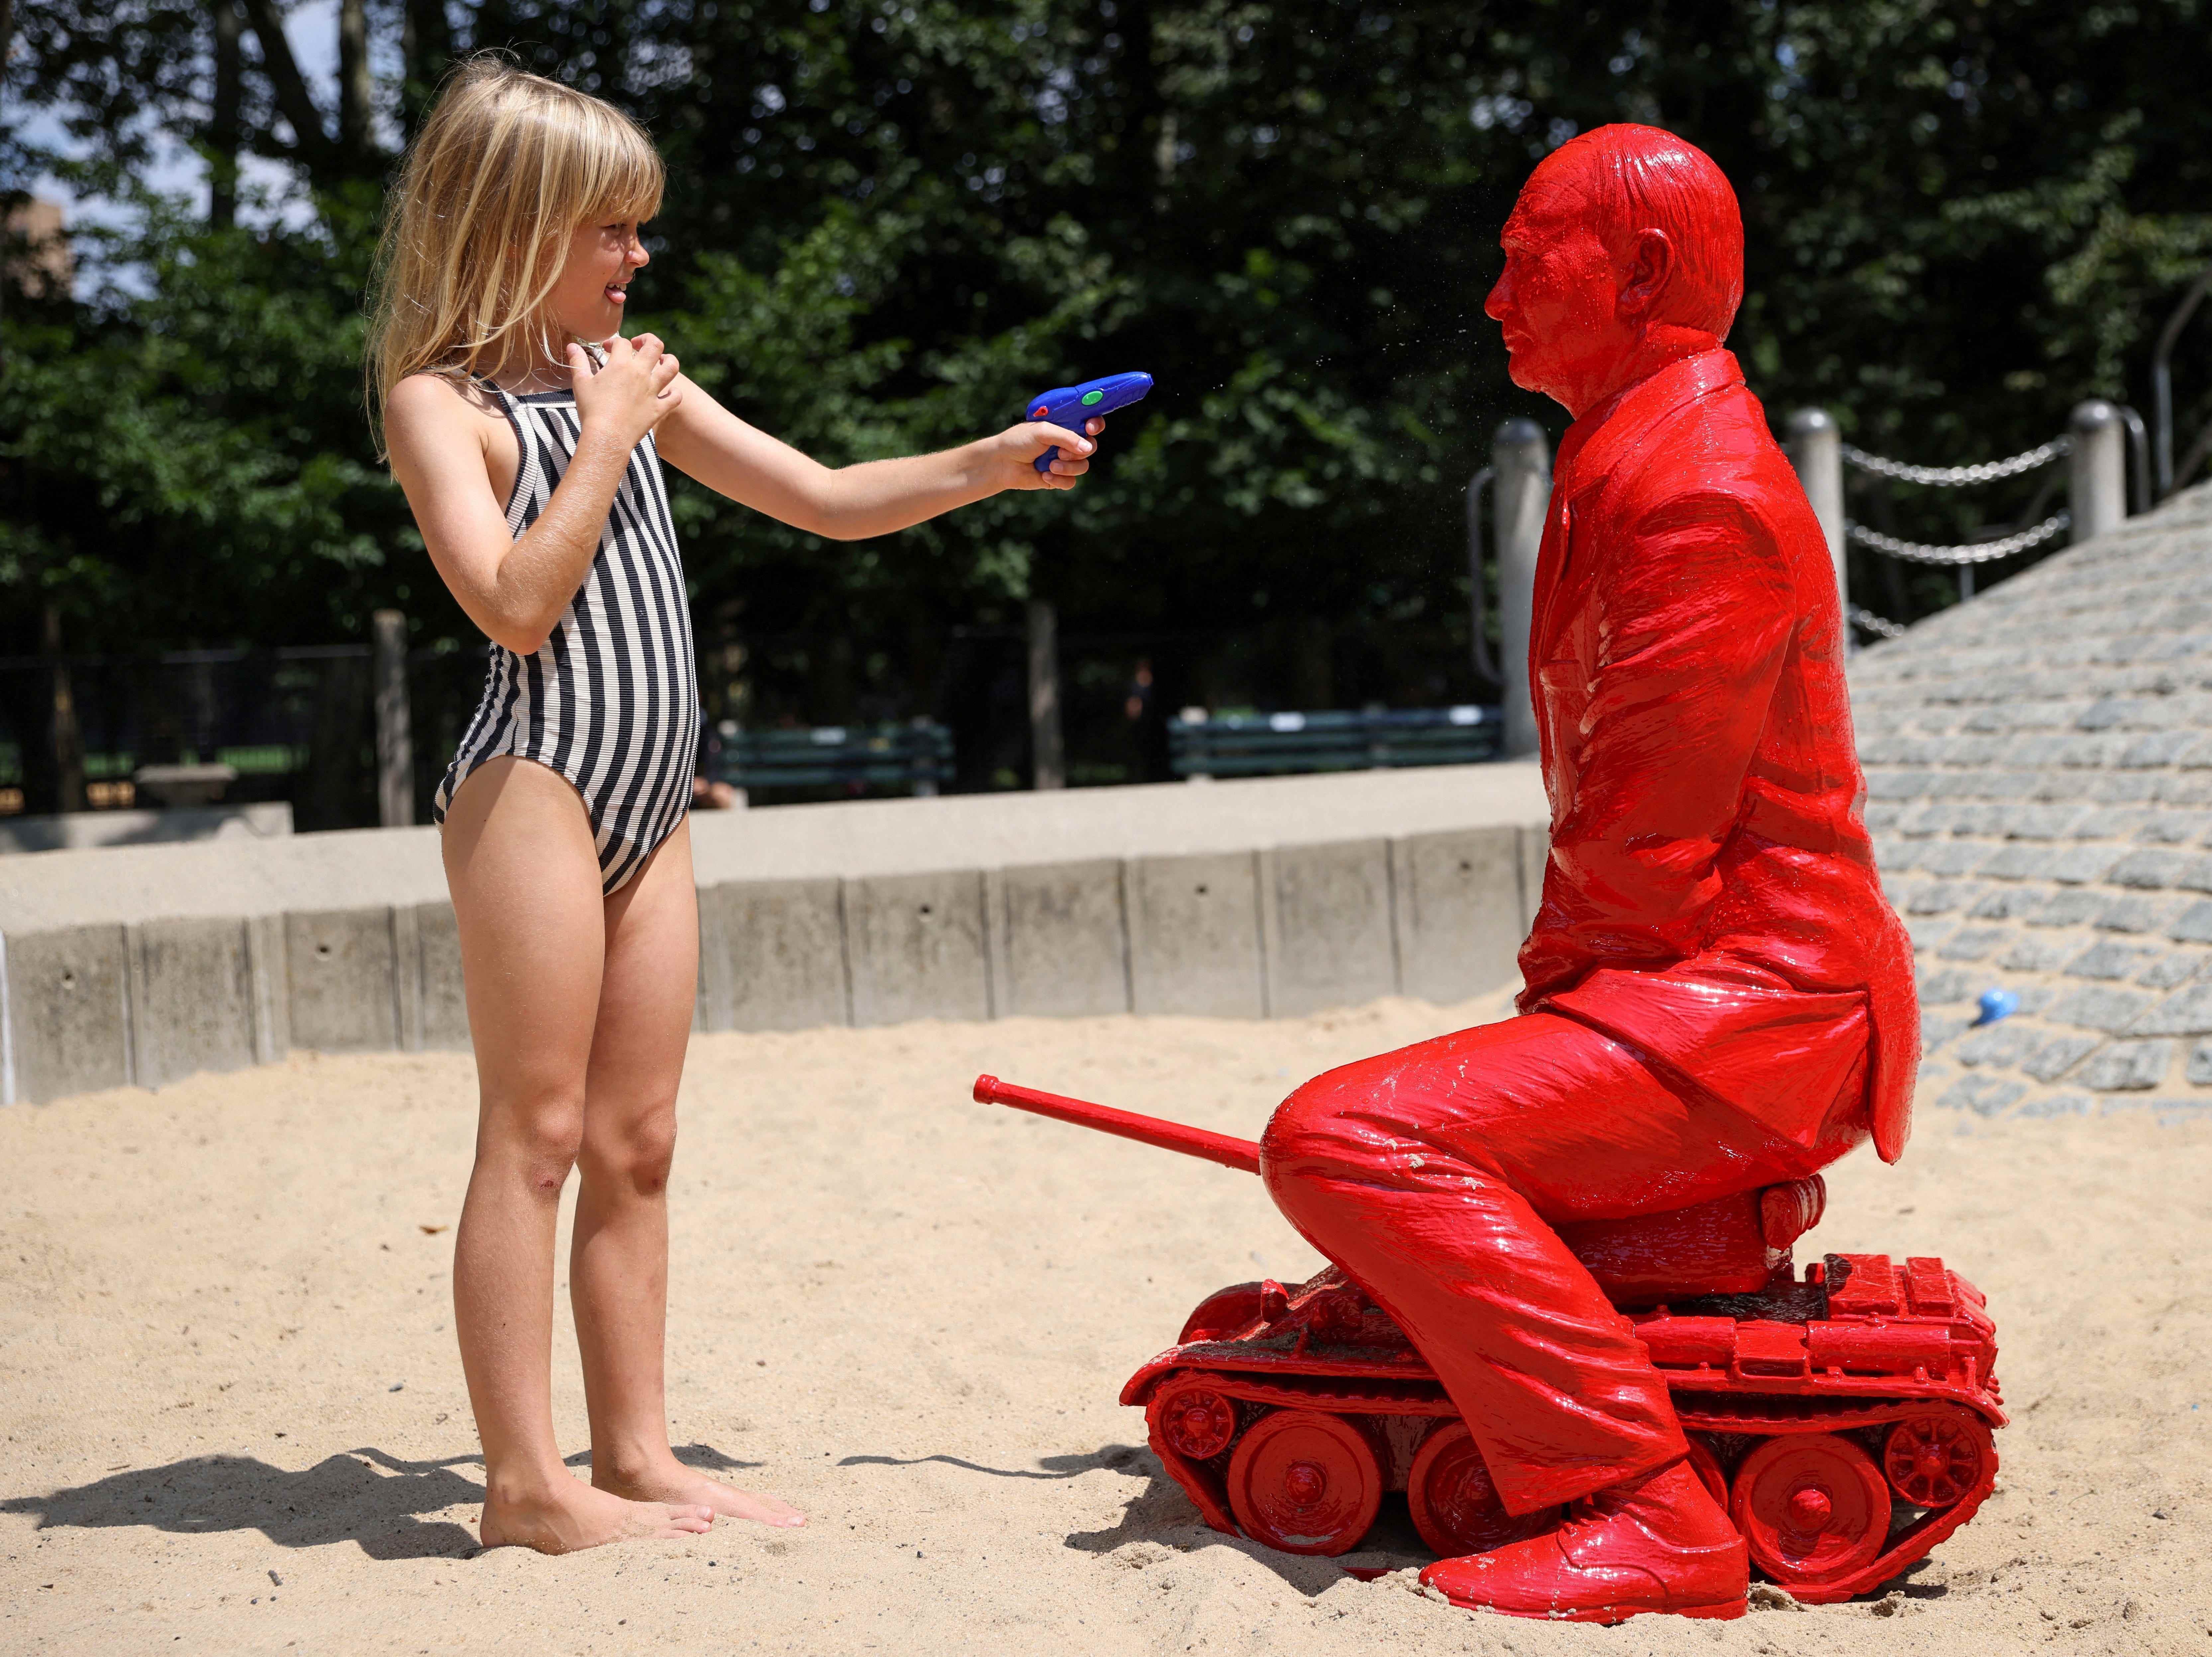 Ein Kind richtet eine Wasserpistole auf eine Statue des russischen Präsidenten Wladimir Putin, der auf einem Panzer des französischen Künstlers James Colomina reitet, auf einem Spielplatz im Central Park in Manhattan, New York City, USA, 2. August 2022.